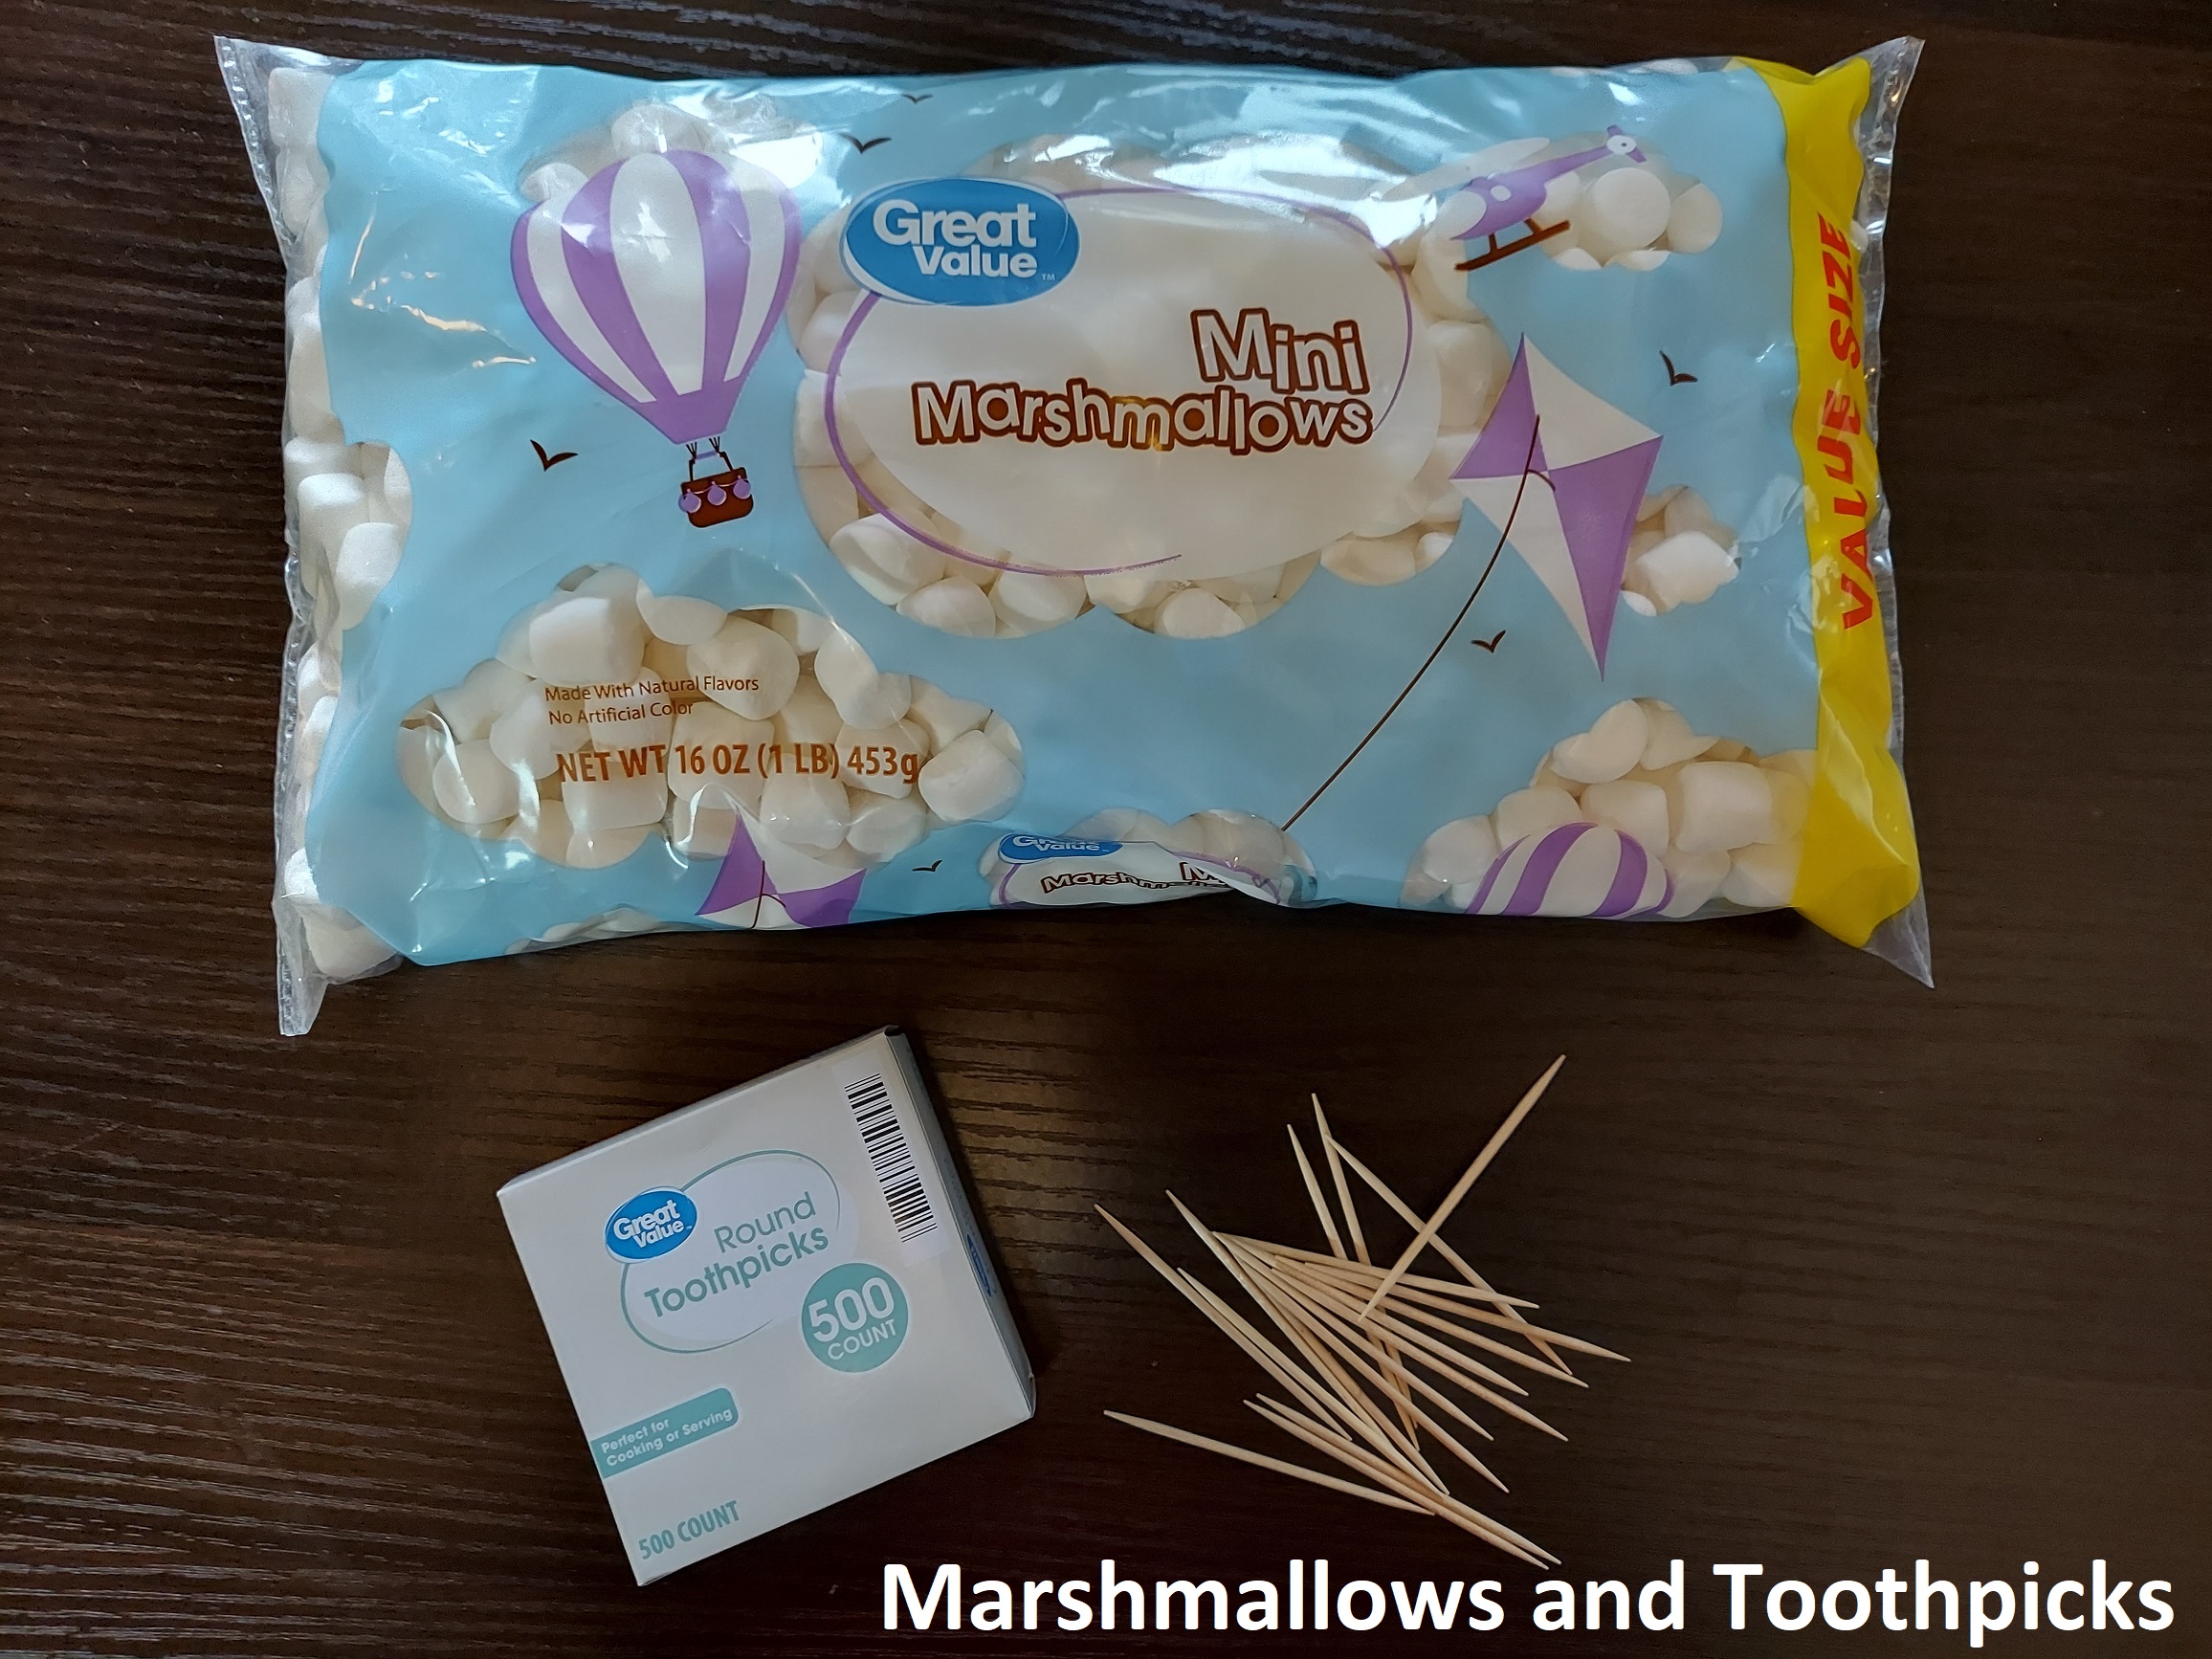 Marshmallows and Toothpicks